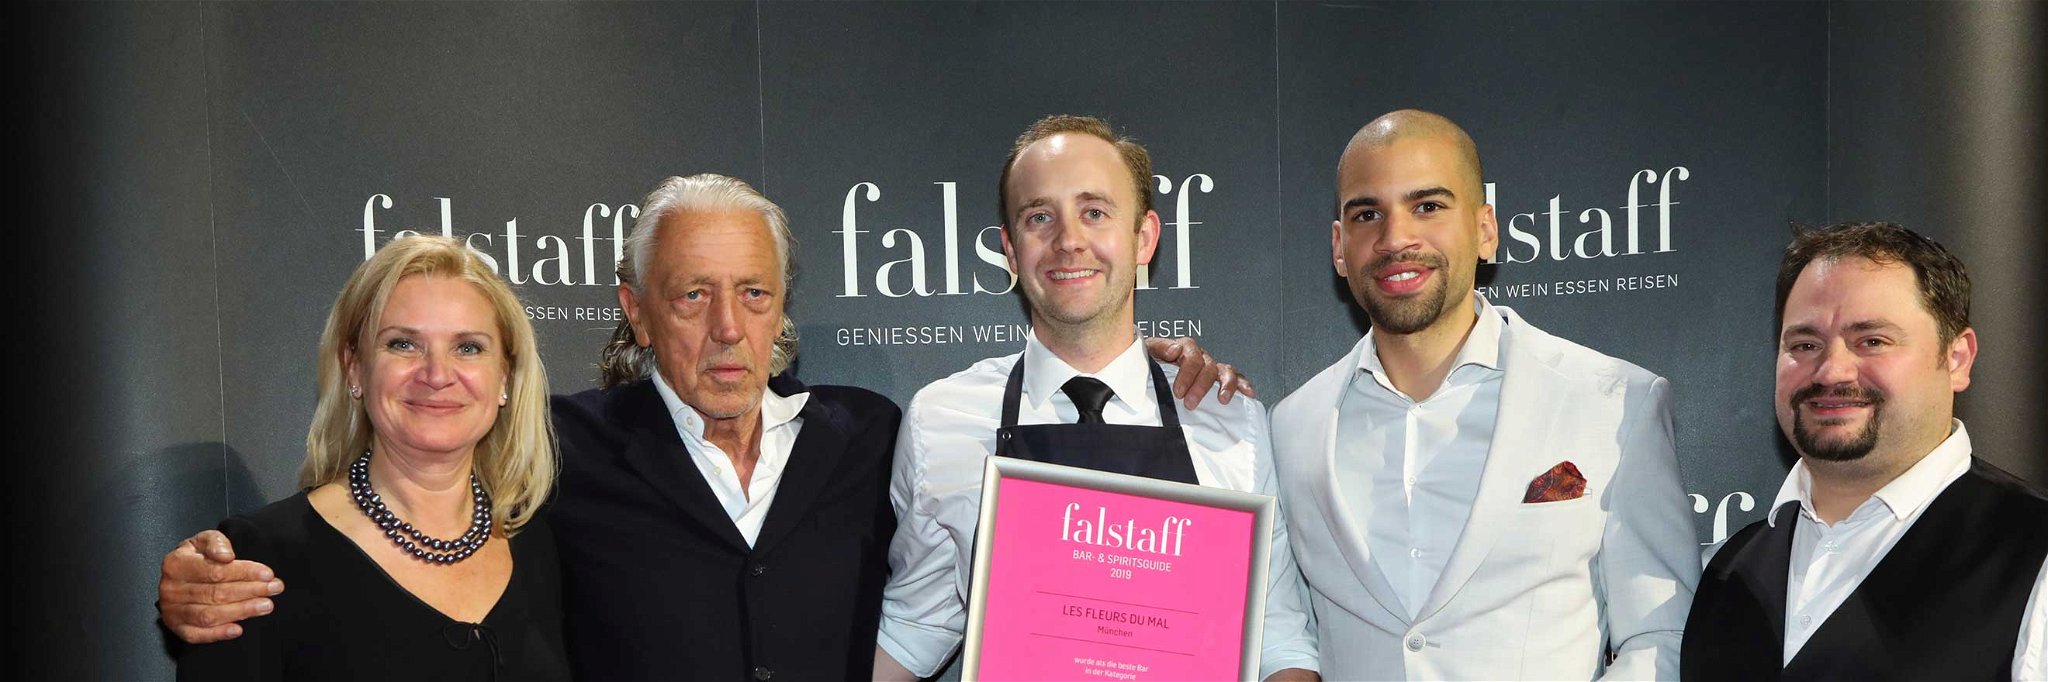 Falstaff-Geschäftsführerin Elisabeth Kamper gratulierte Charles Schumann (2. v. li) und seinem Team zur Auszeichnung.